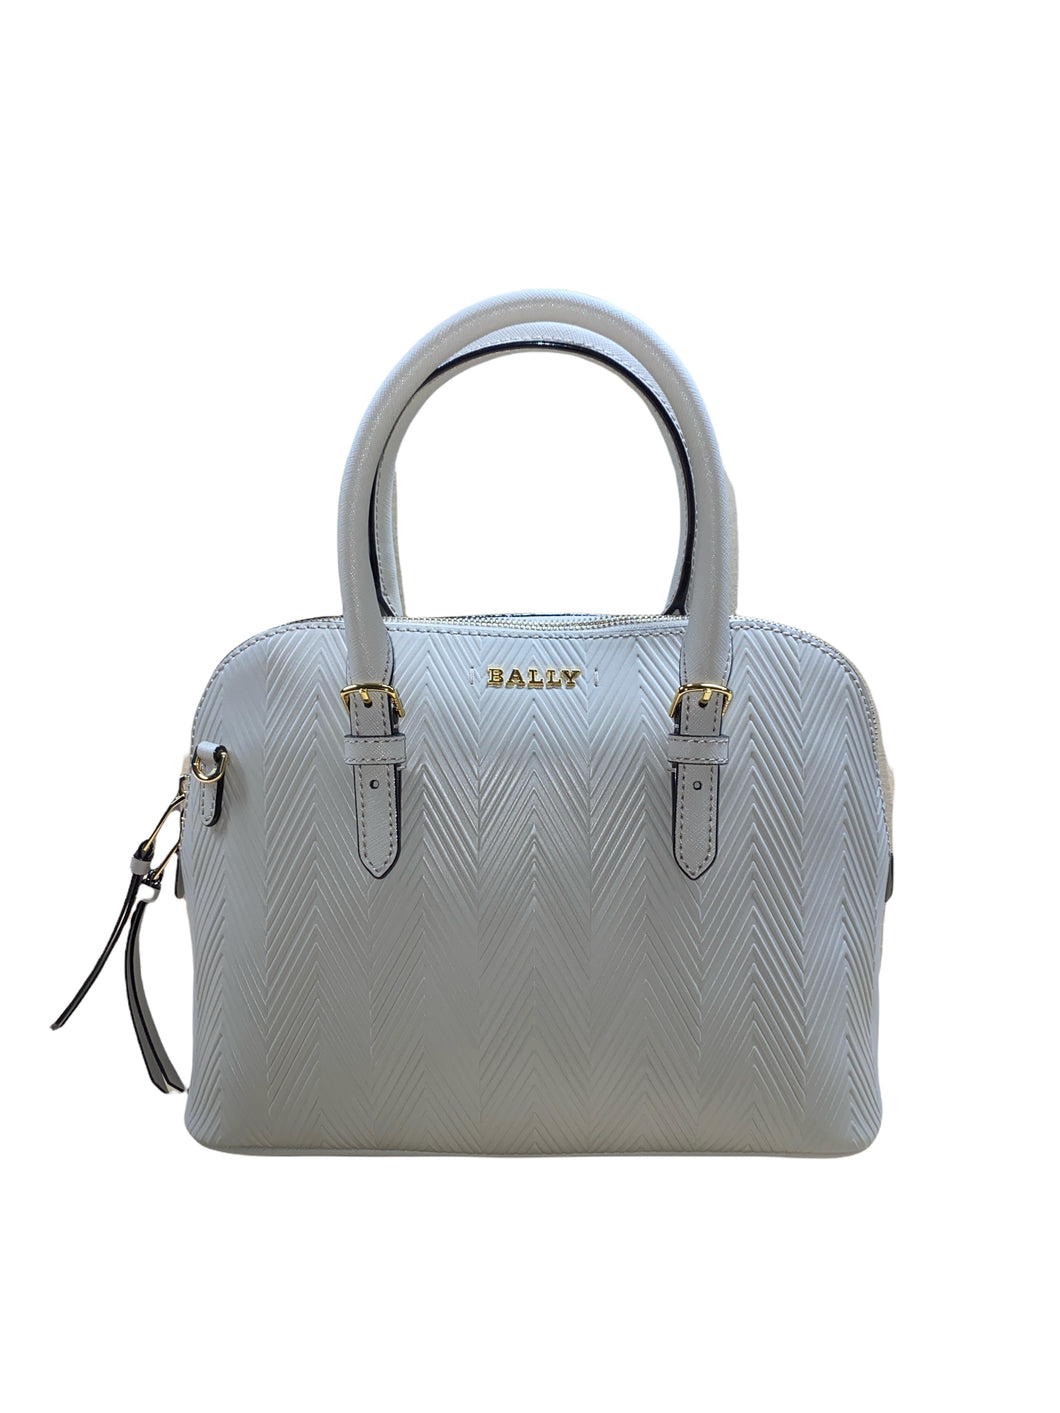 NEW Bally Sadye Women's 6232668 Beige Leather Shoulder Bag MSRP $780